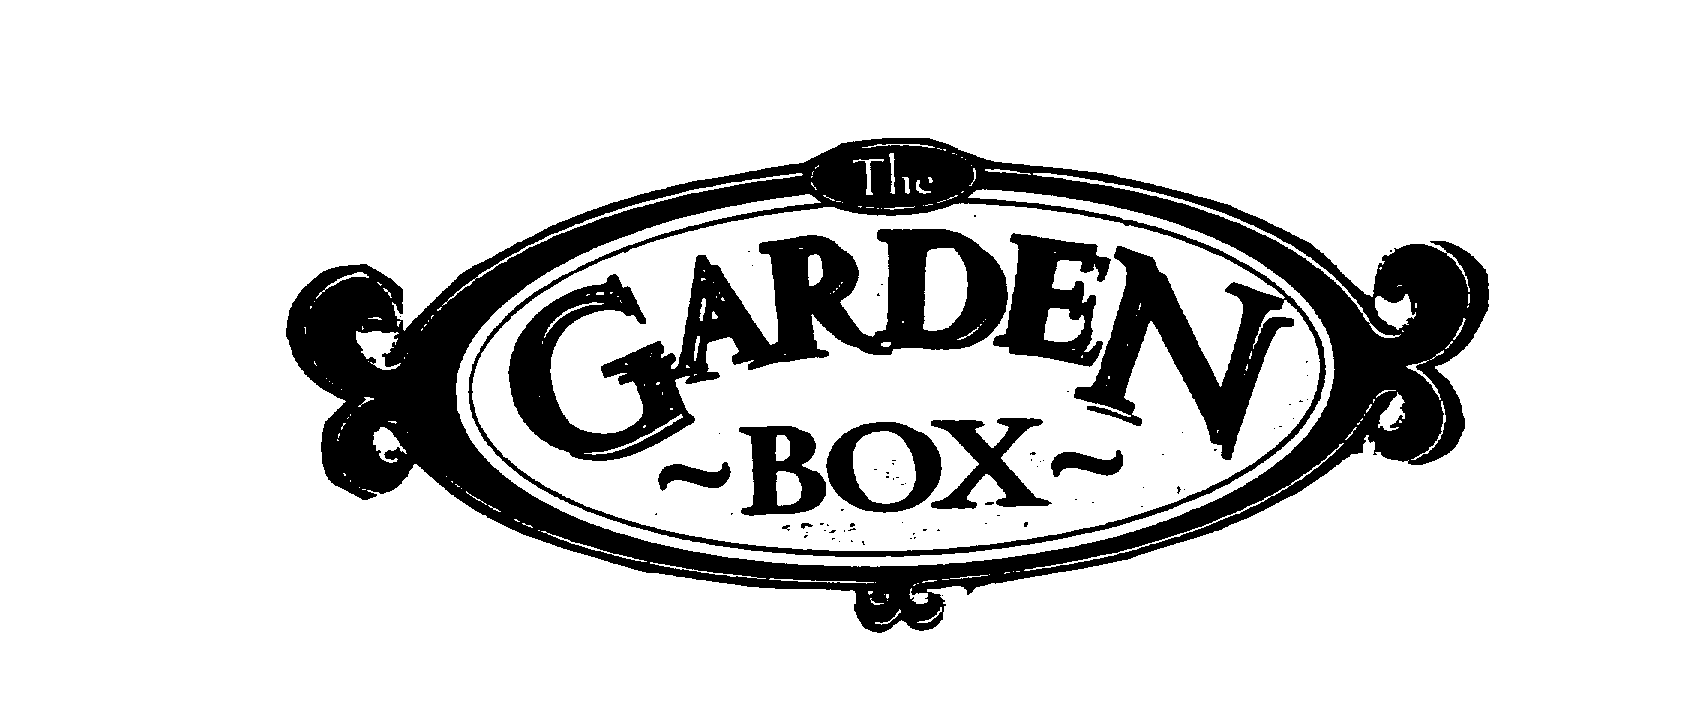  THE GARDEN BOX